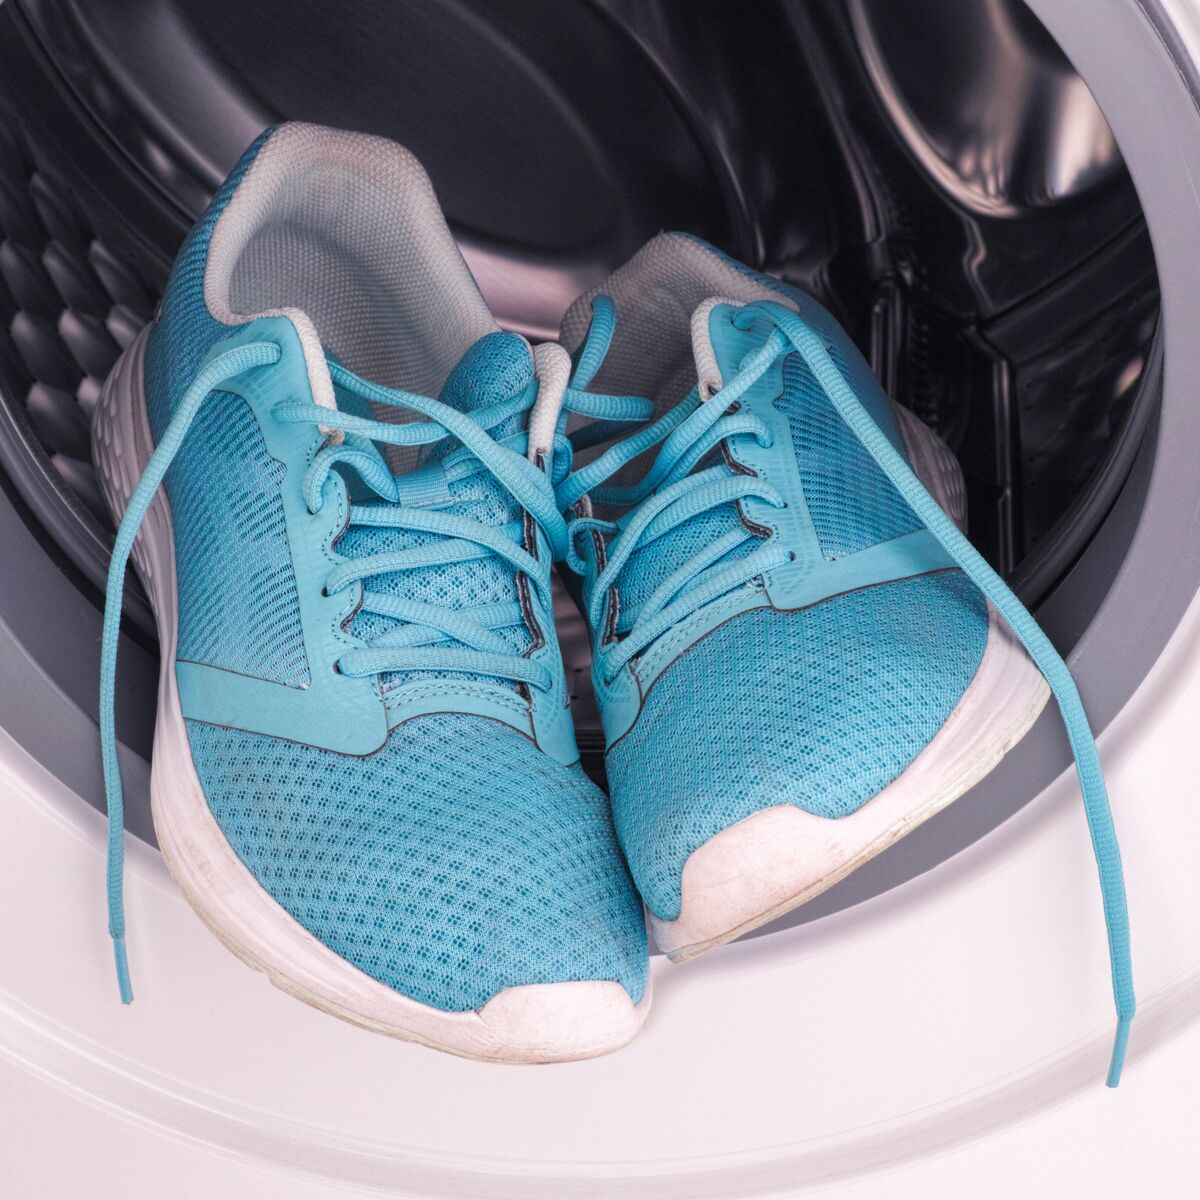 Laver les chaussures en machine, conseils utiles